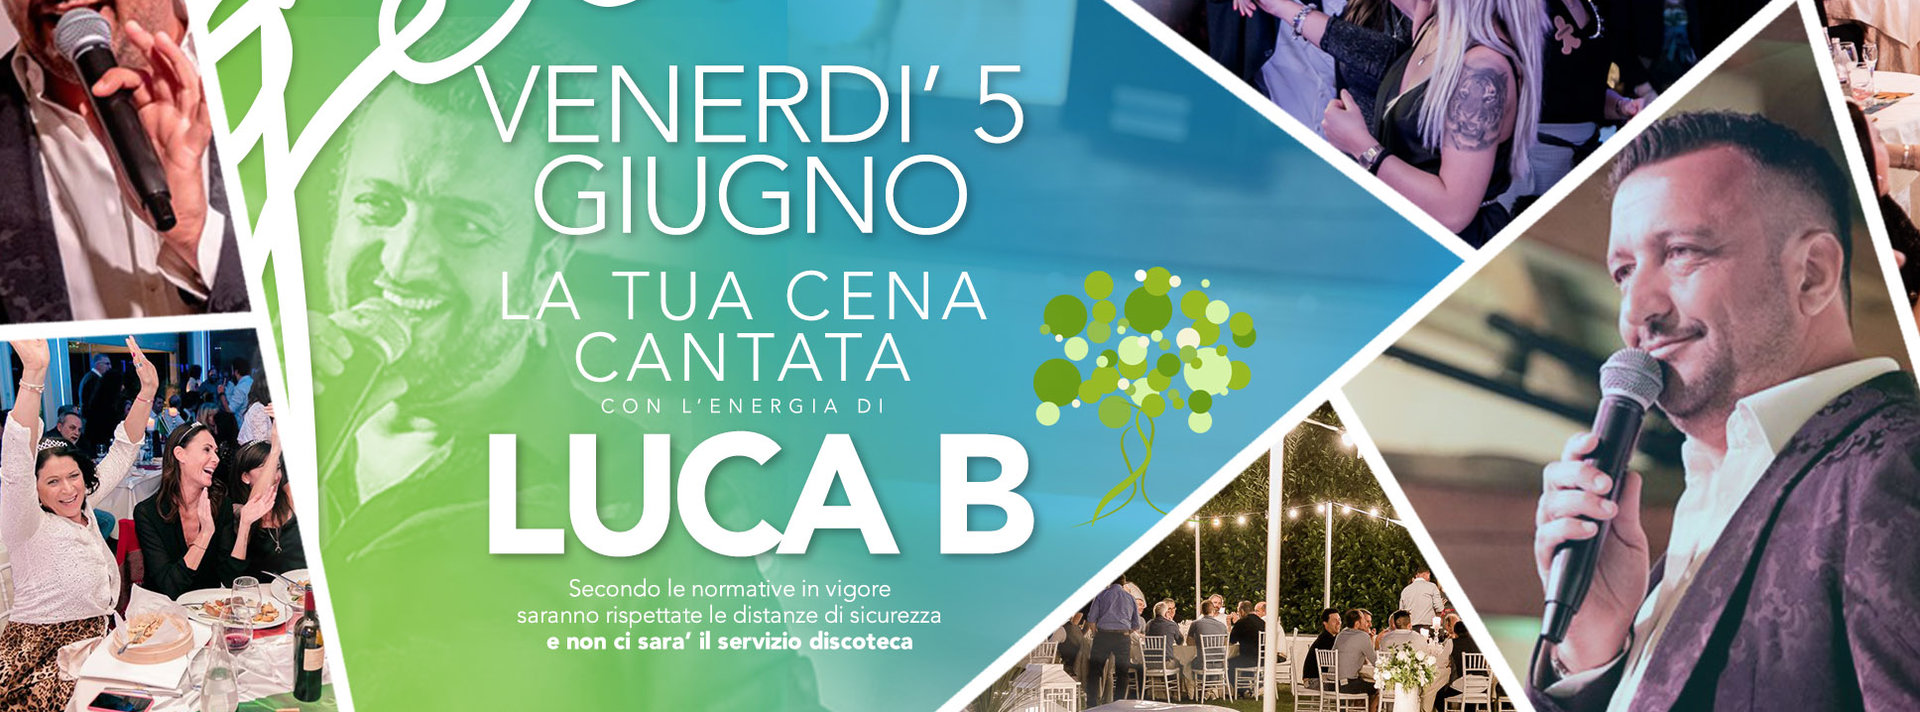 Cena cantata Gelsi con Luca B - 5 giugno 2020